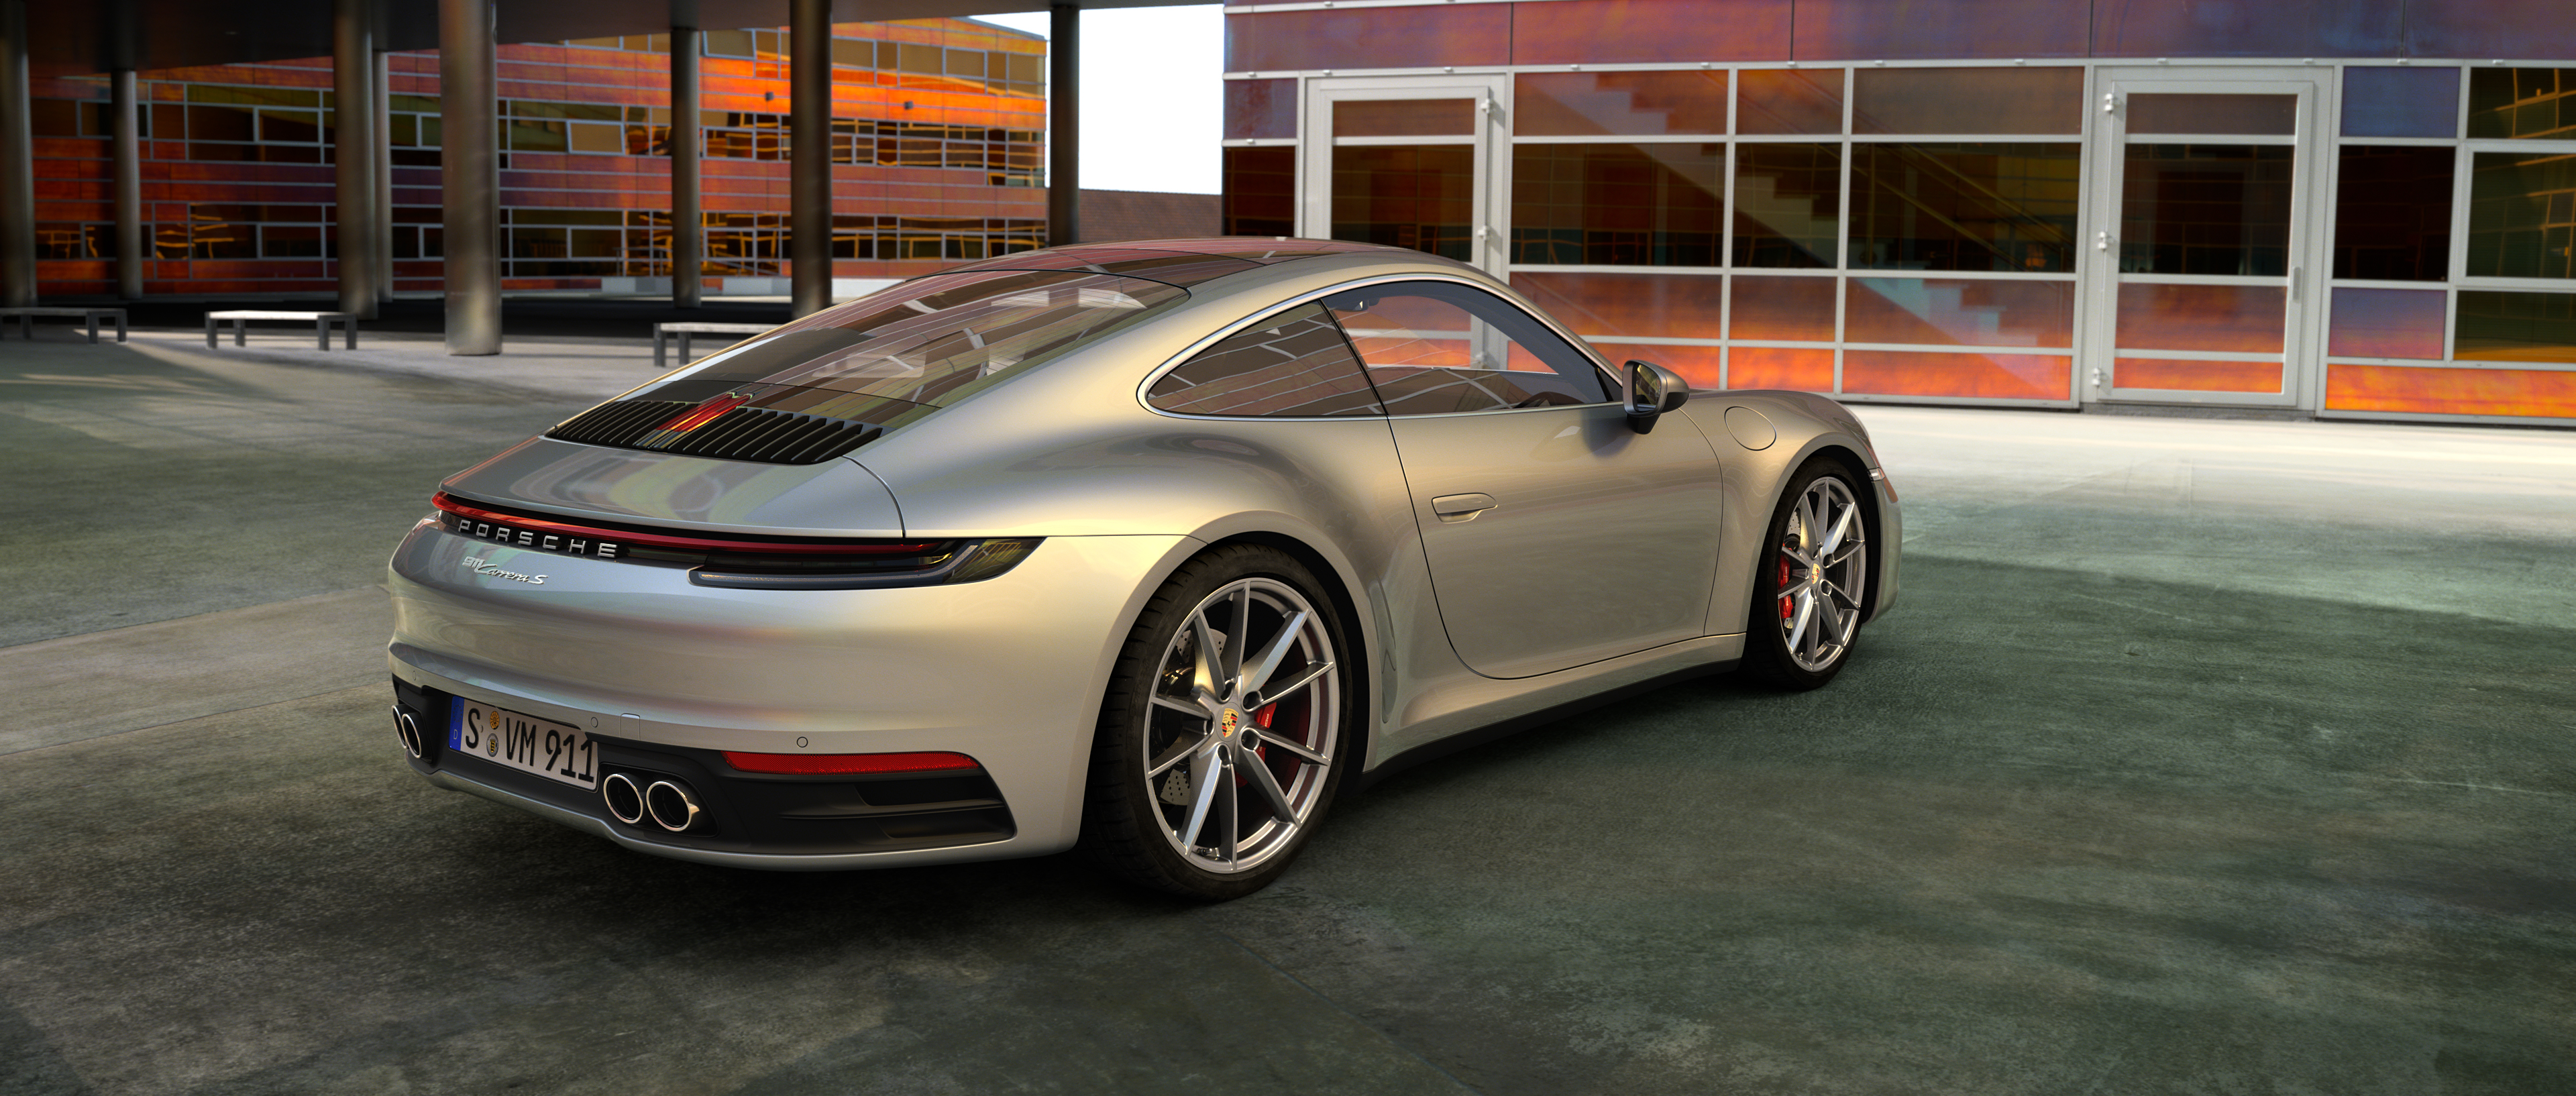 Porsche 911 turbo s prix